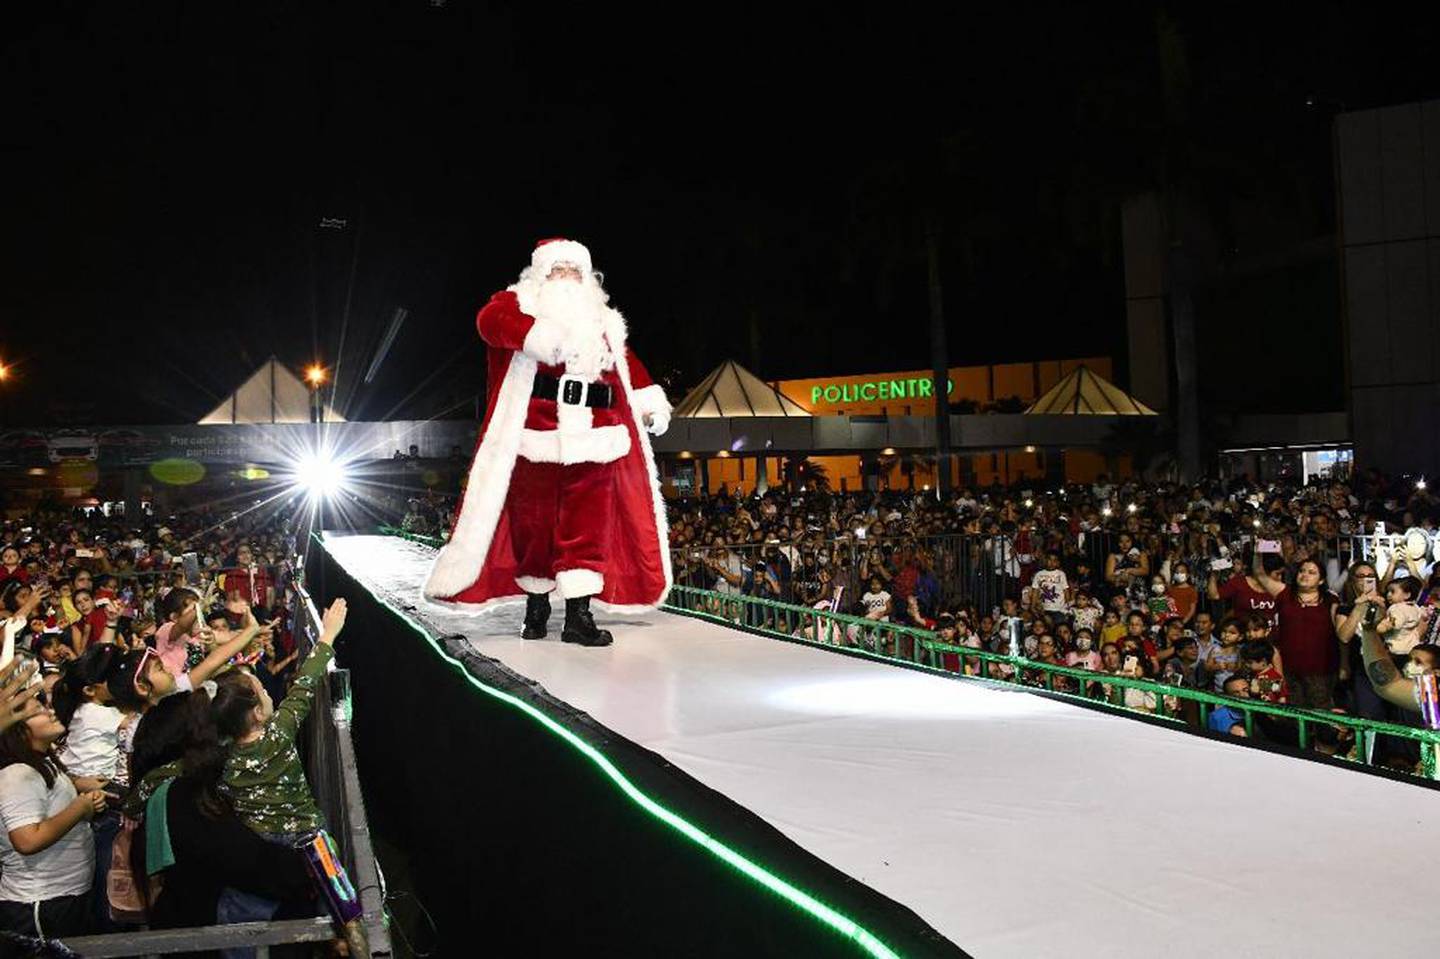 Papá Noel, personaje principal de las fiestas navideñas, formó parte del espectáculo.